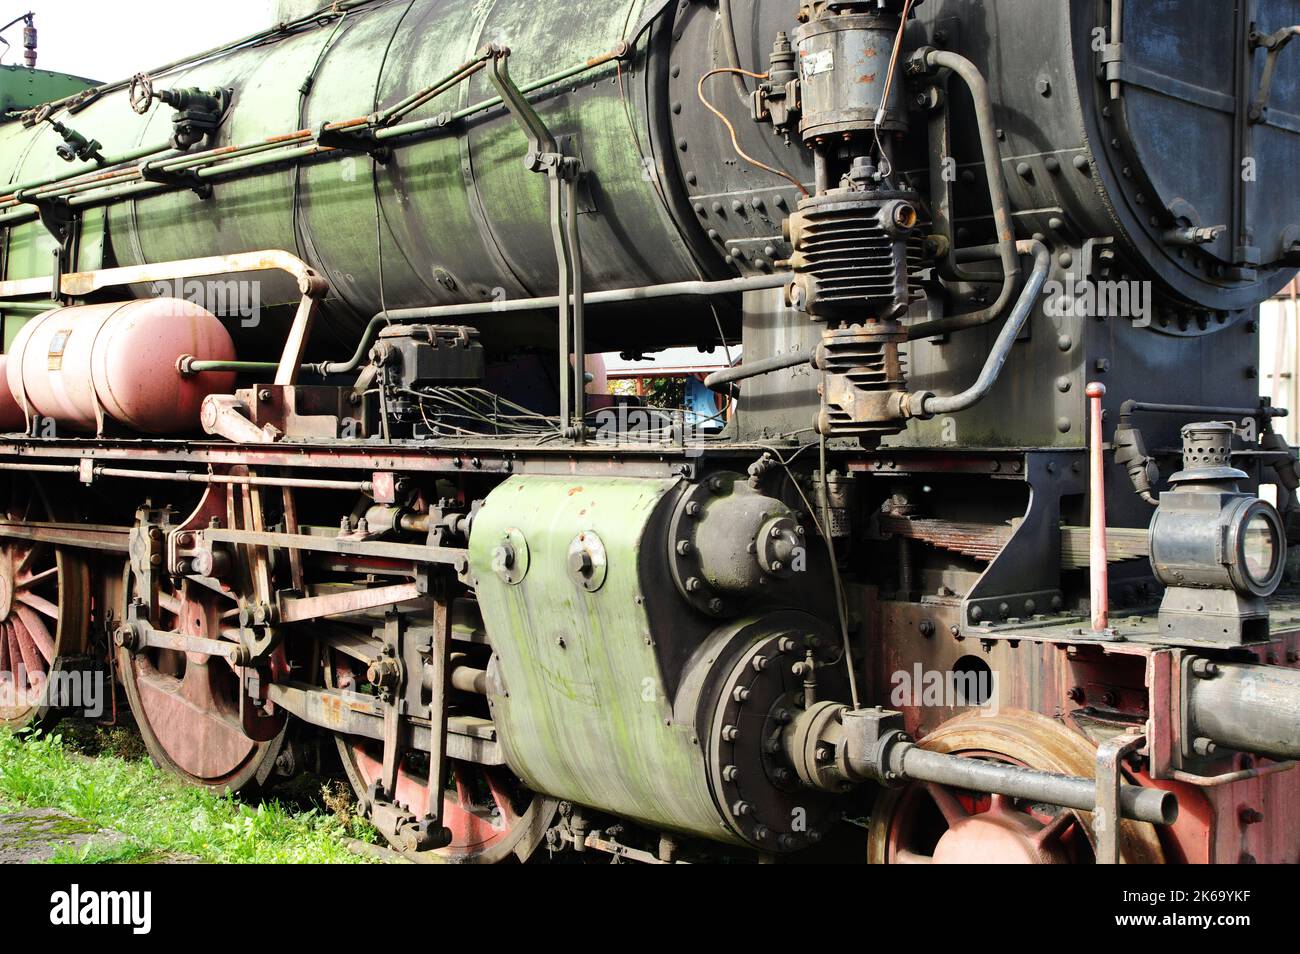 Der vordere Teil einer Dampflokomotive. Ein Fragment des Kessels, der Räder, der Kolben und der Laterne sind sichtbar. Stockfoto